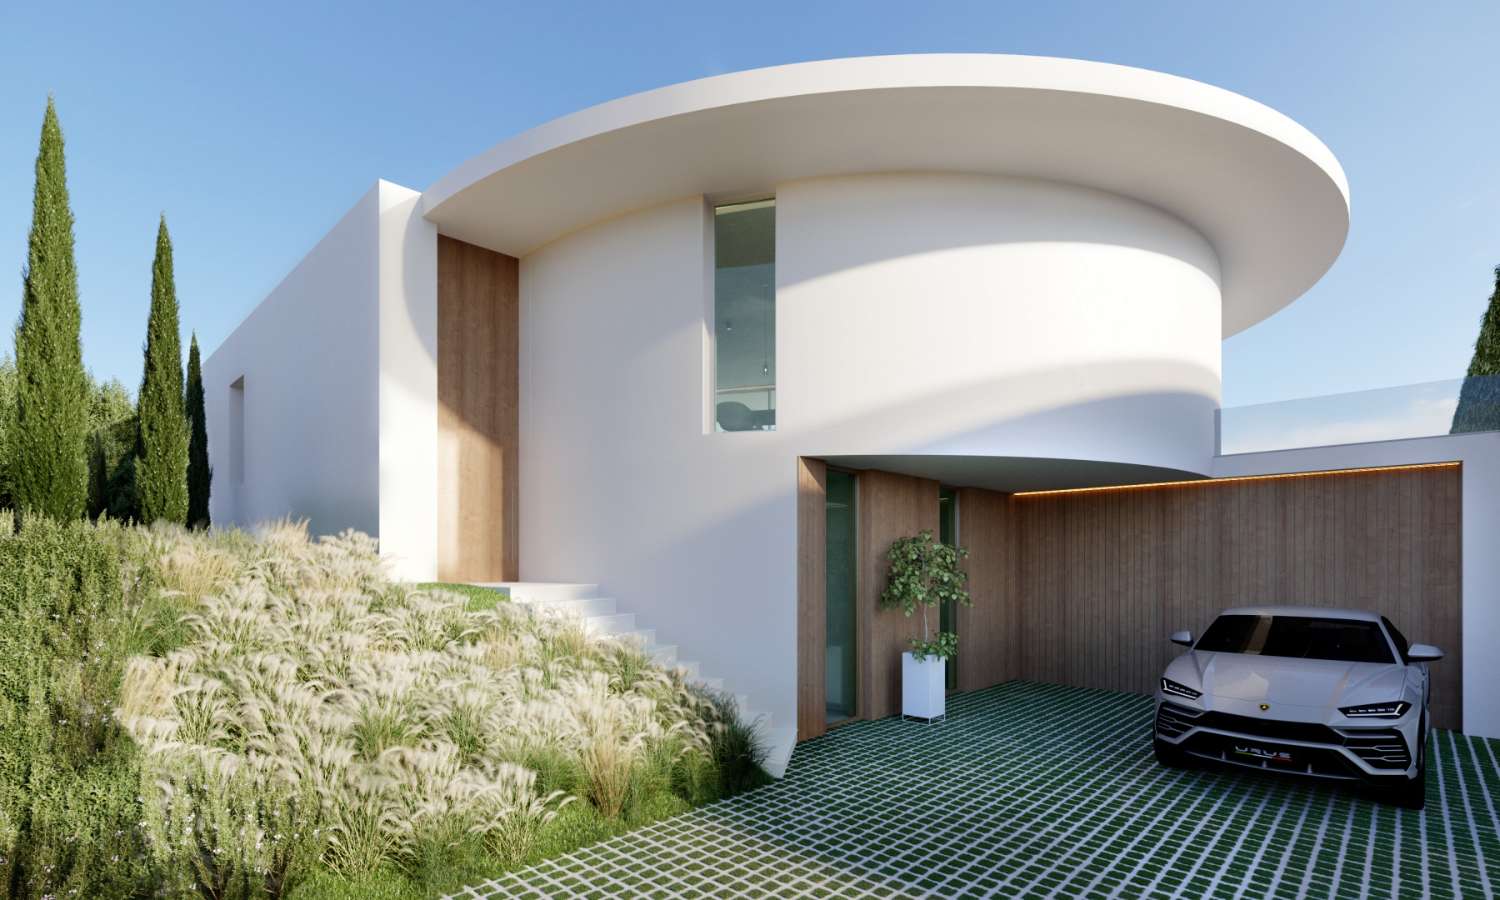 Priser Minimalistisk Villa med havsutsikt i lyxig urbanisering med säkerhet